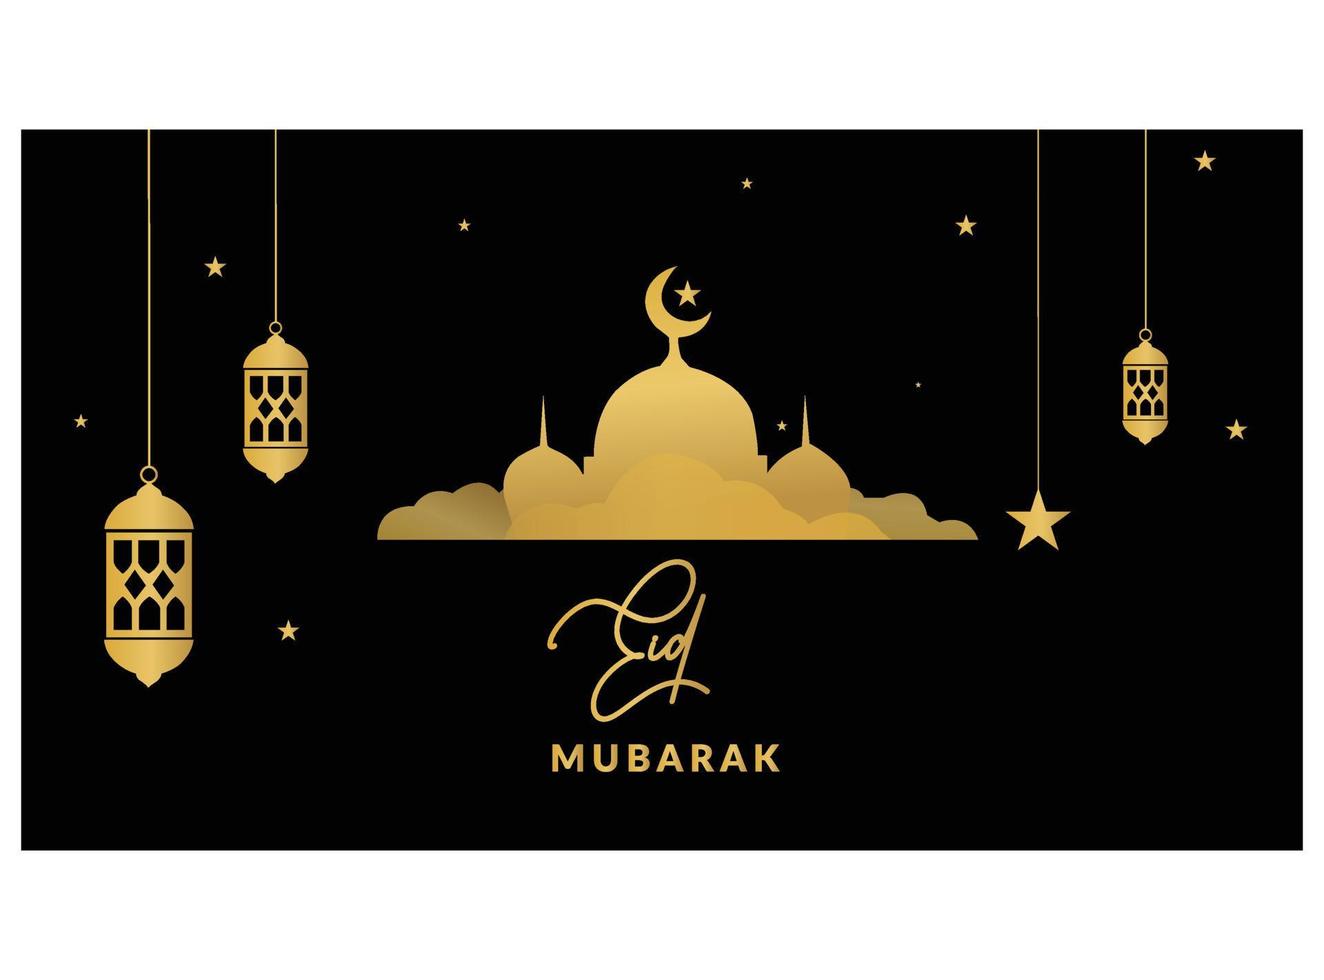 vektor illustration av hälsning för eid mubarak text betyder eid mubarak, gyllene skinande stjärna, måne, begrepp för festlig bakgrund. eid mubarak bakgrund. muslim dekorativ gyllene stjärnor och måne vektor.